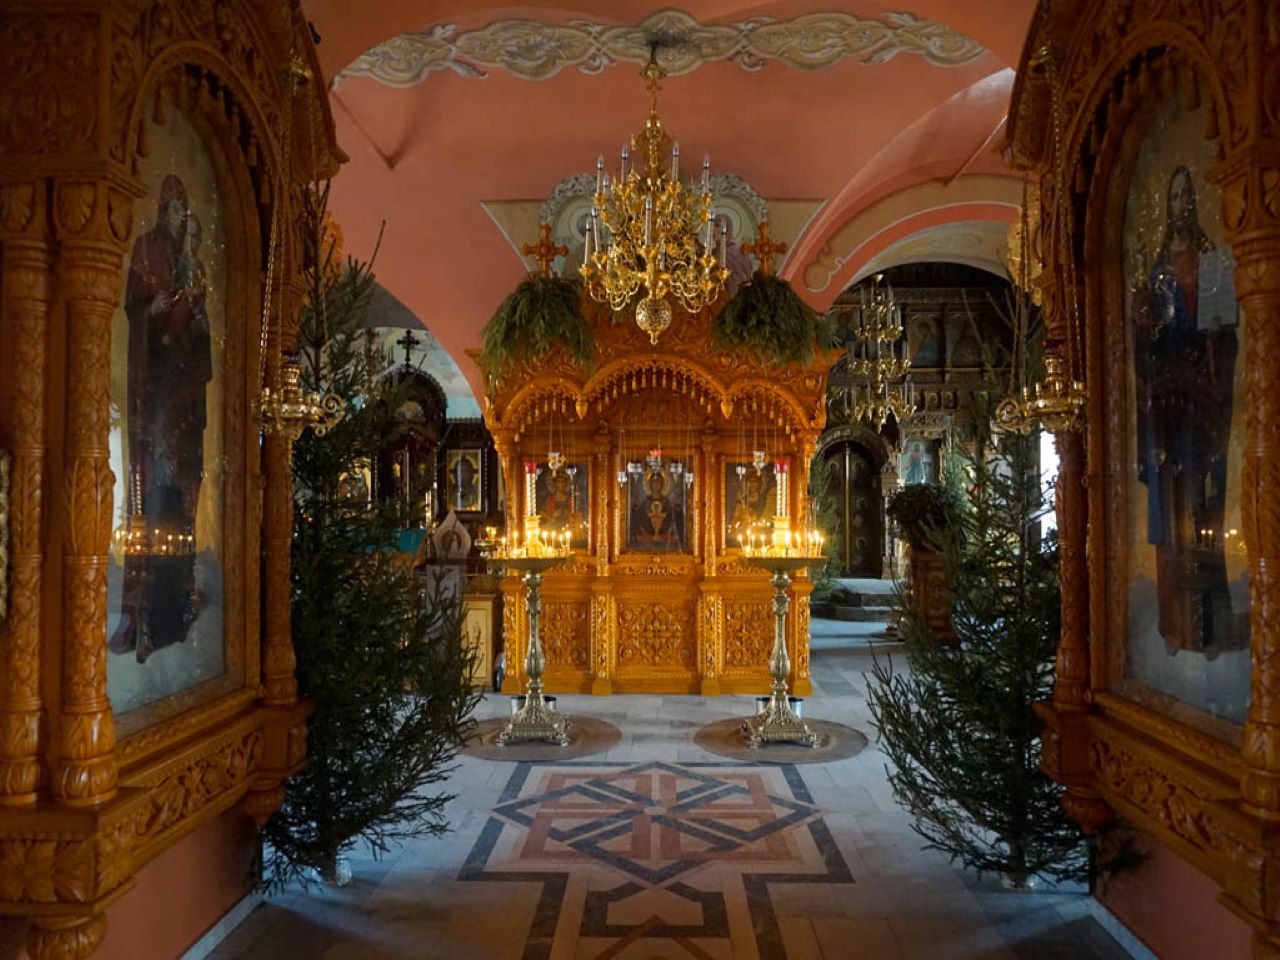 Серпуховский Высоцкий мужской монастырь